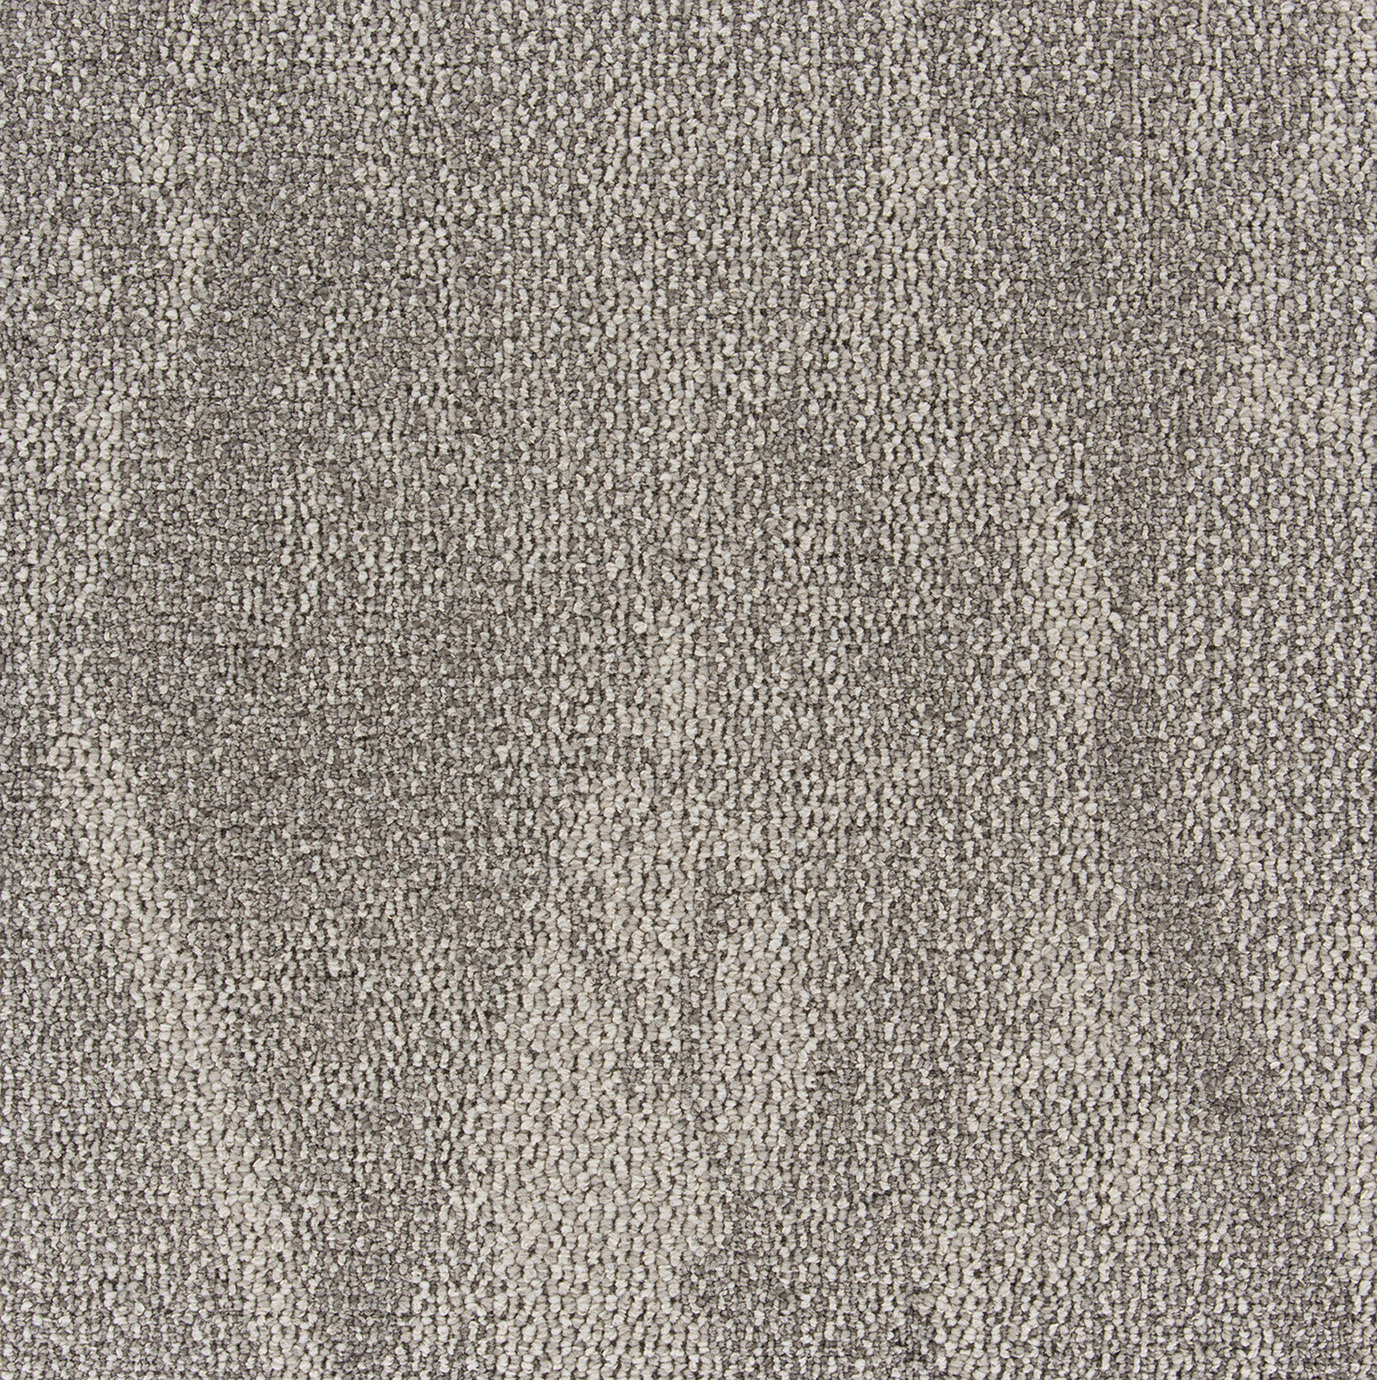 AB230-1 川島織物セルコン タイルカーペット モードスタイル ウィーンプリーツ 川島織物セルコン タイルカーペット